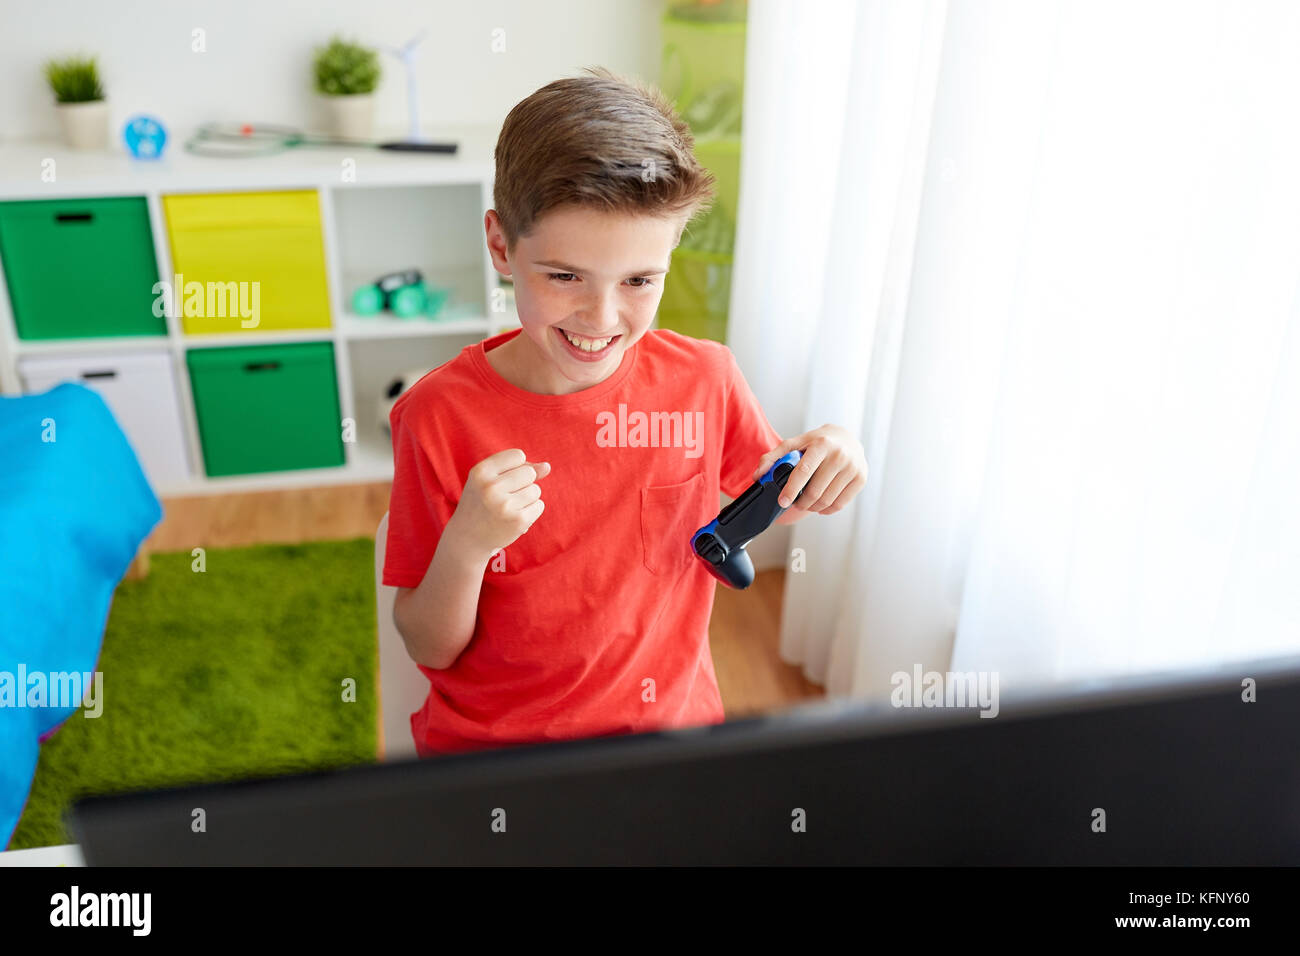 Junge mit Gamepad spielen Video Game auf dem Computer Stockfoto